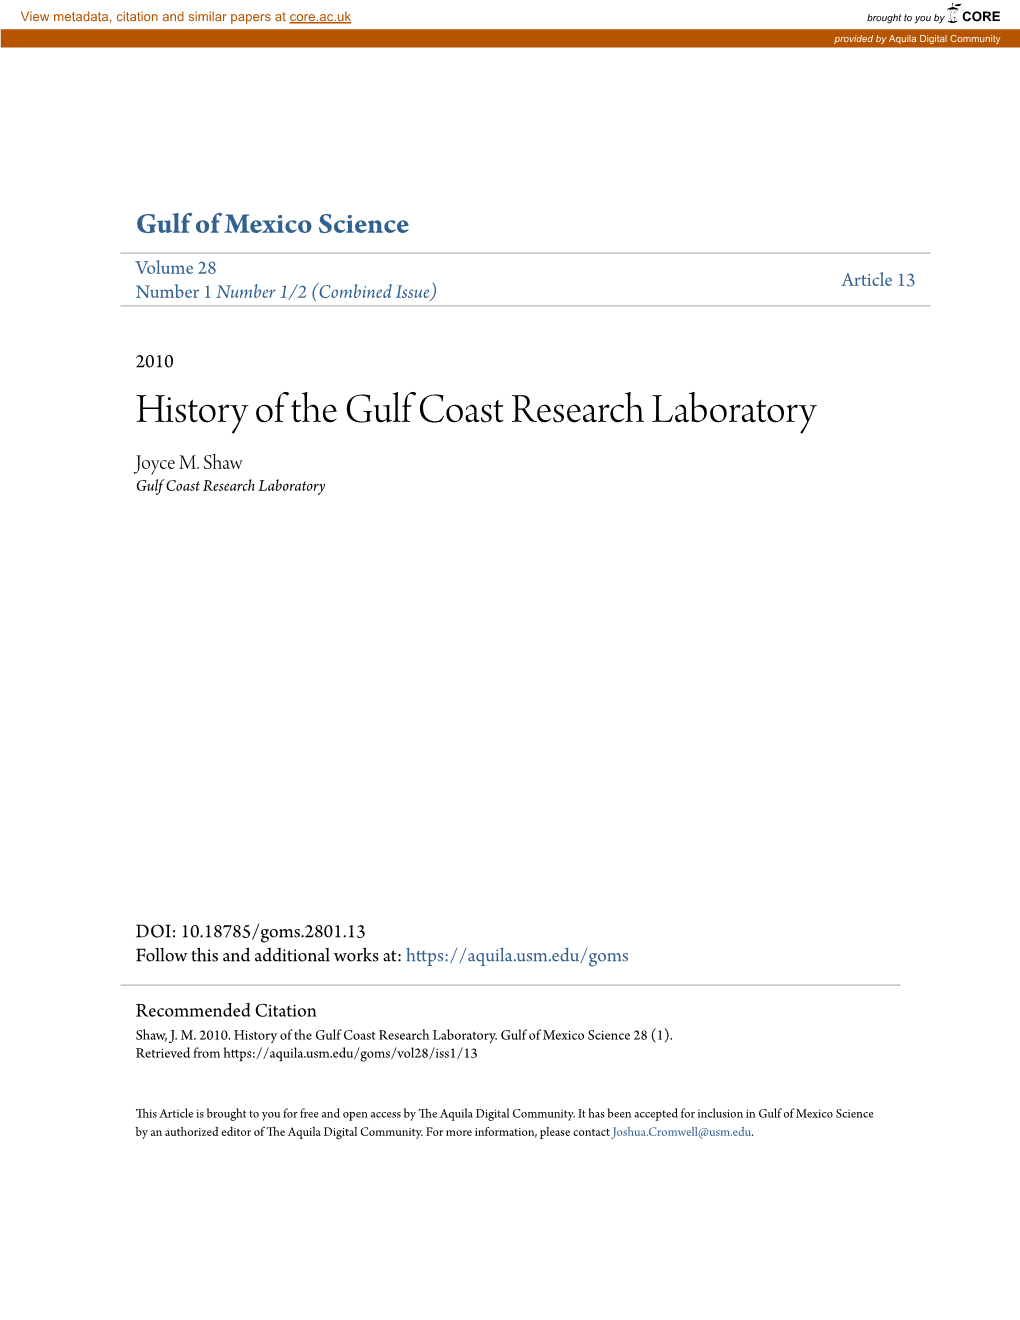 History of the Gulf Coast Research Laboratory Joyce M